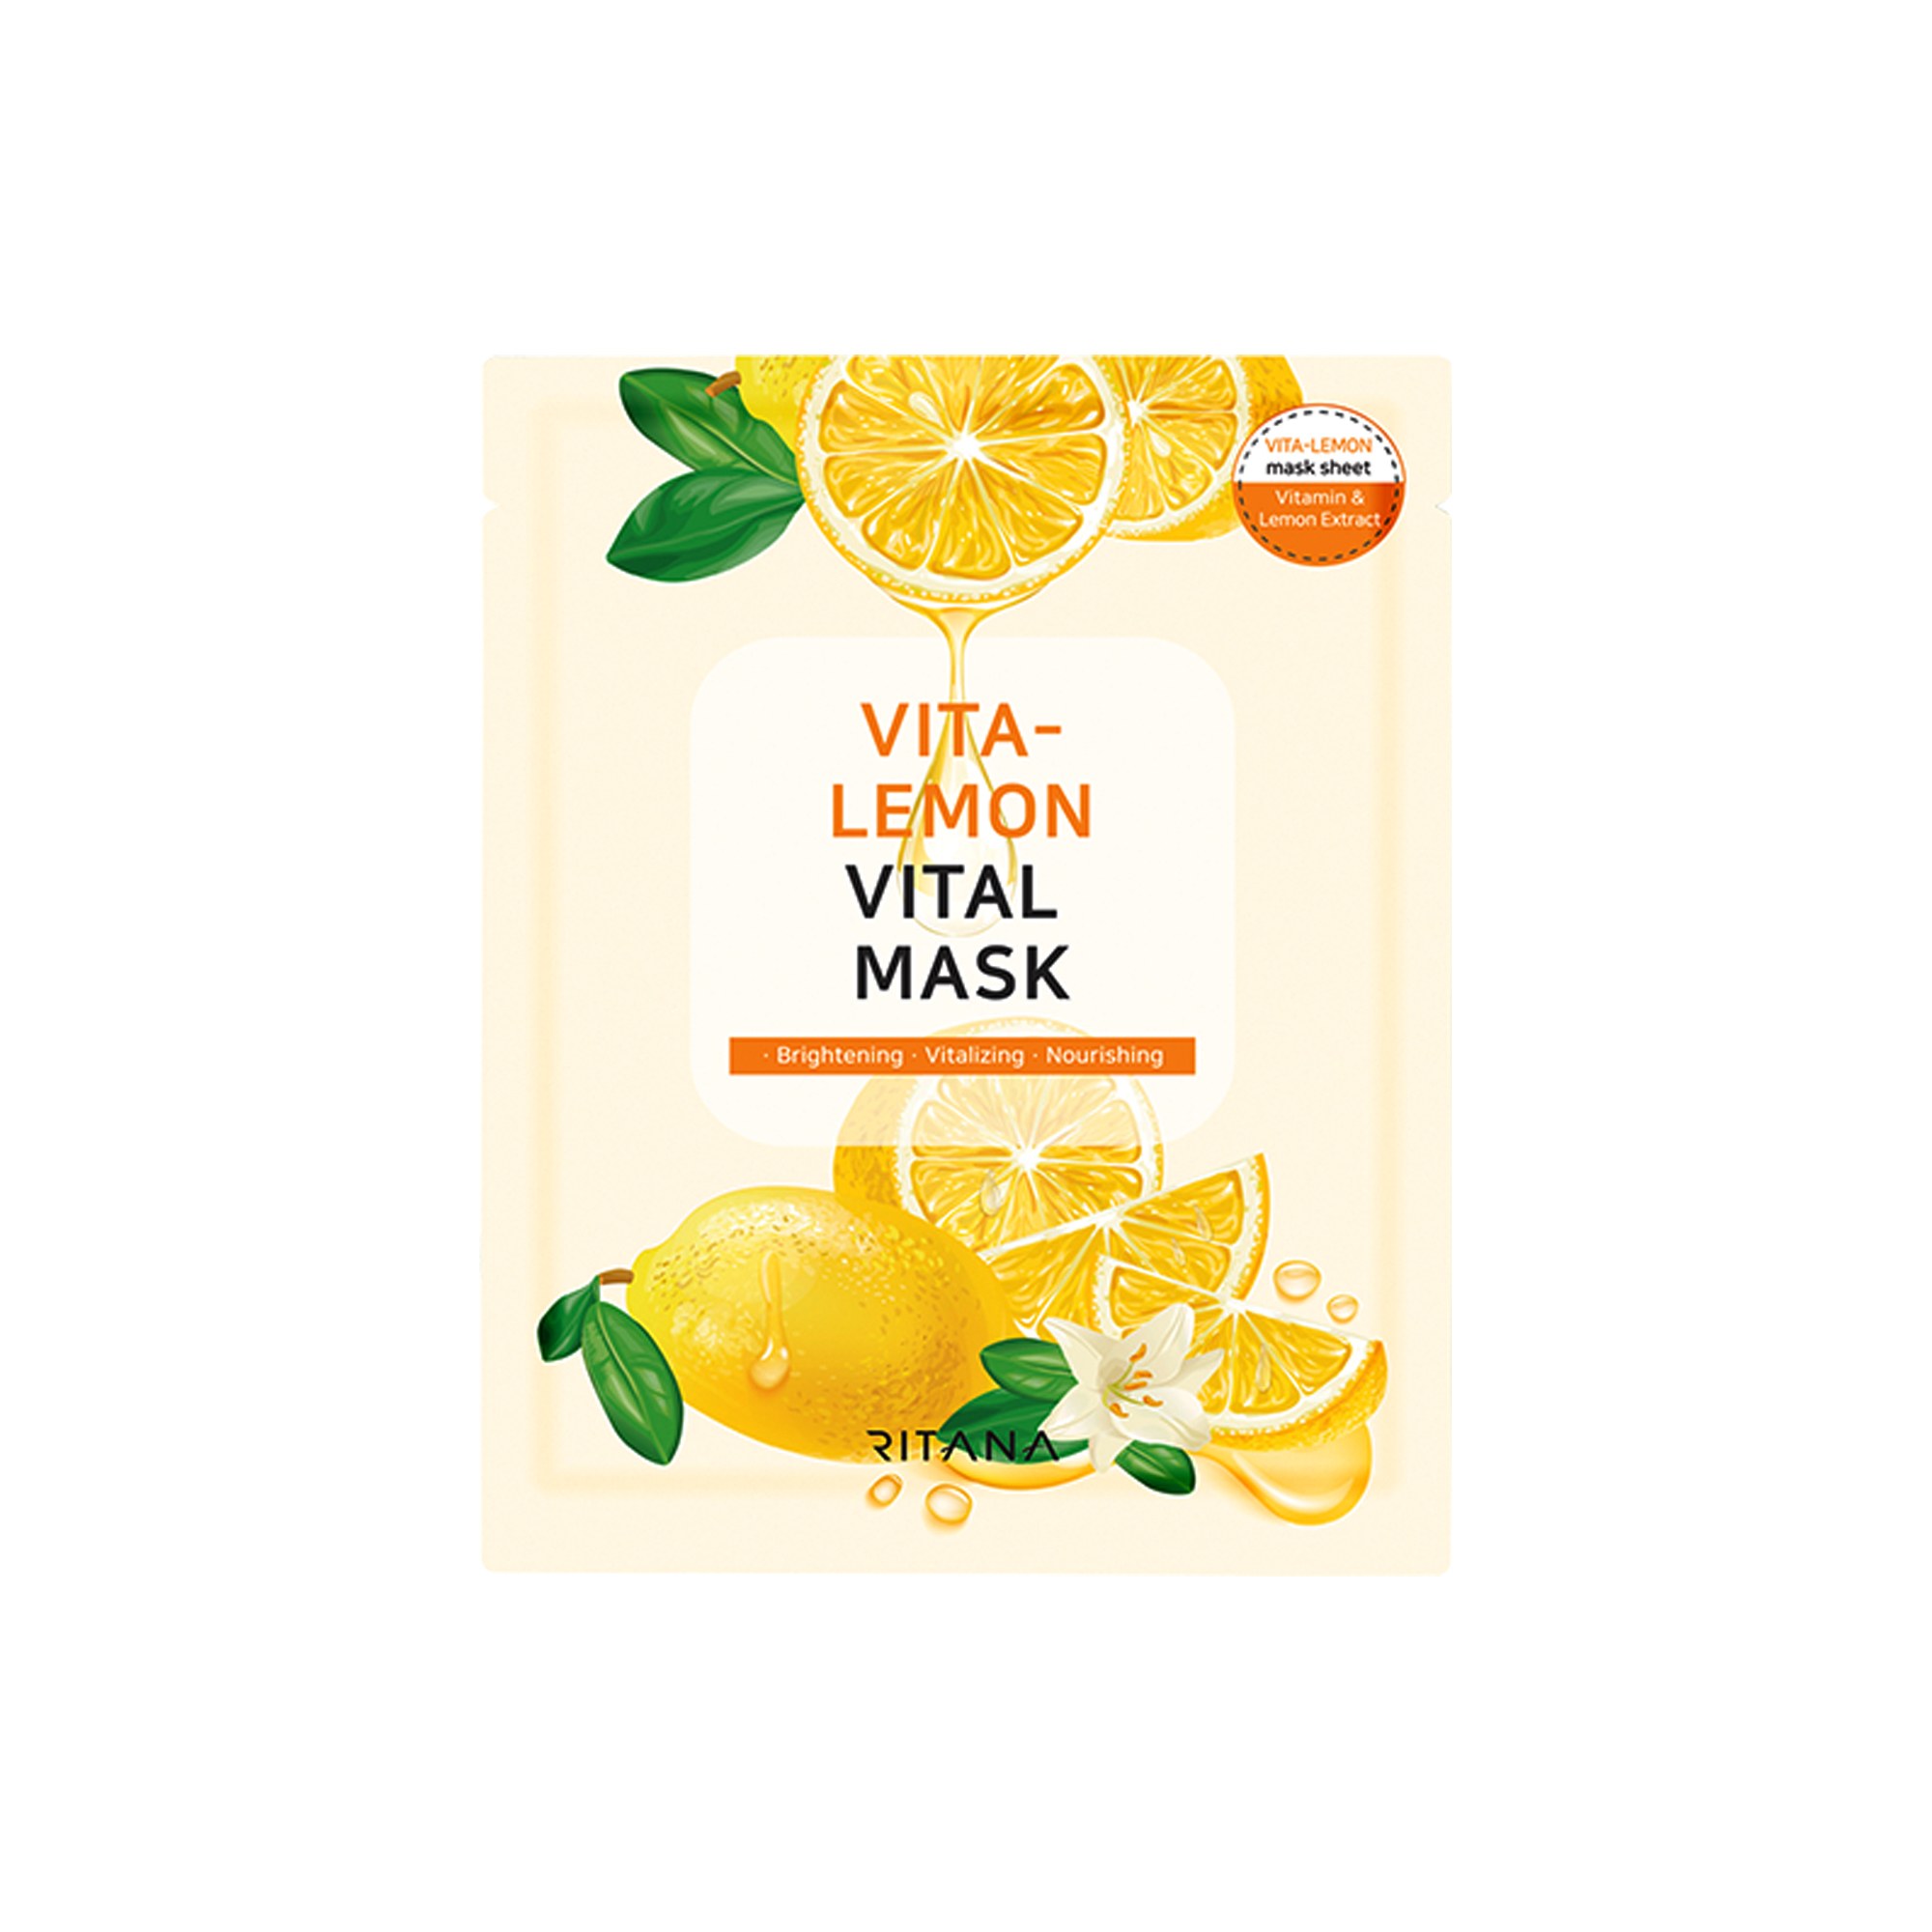 Ritana Vita-Lemon Vital Mask 23ml